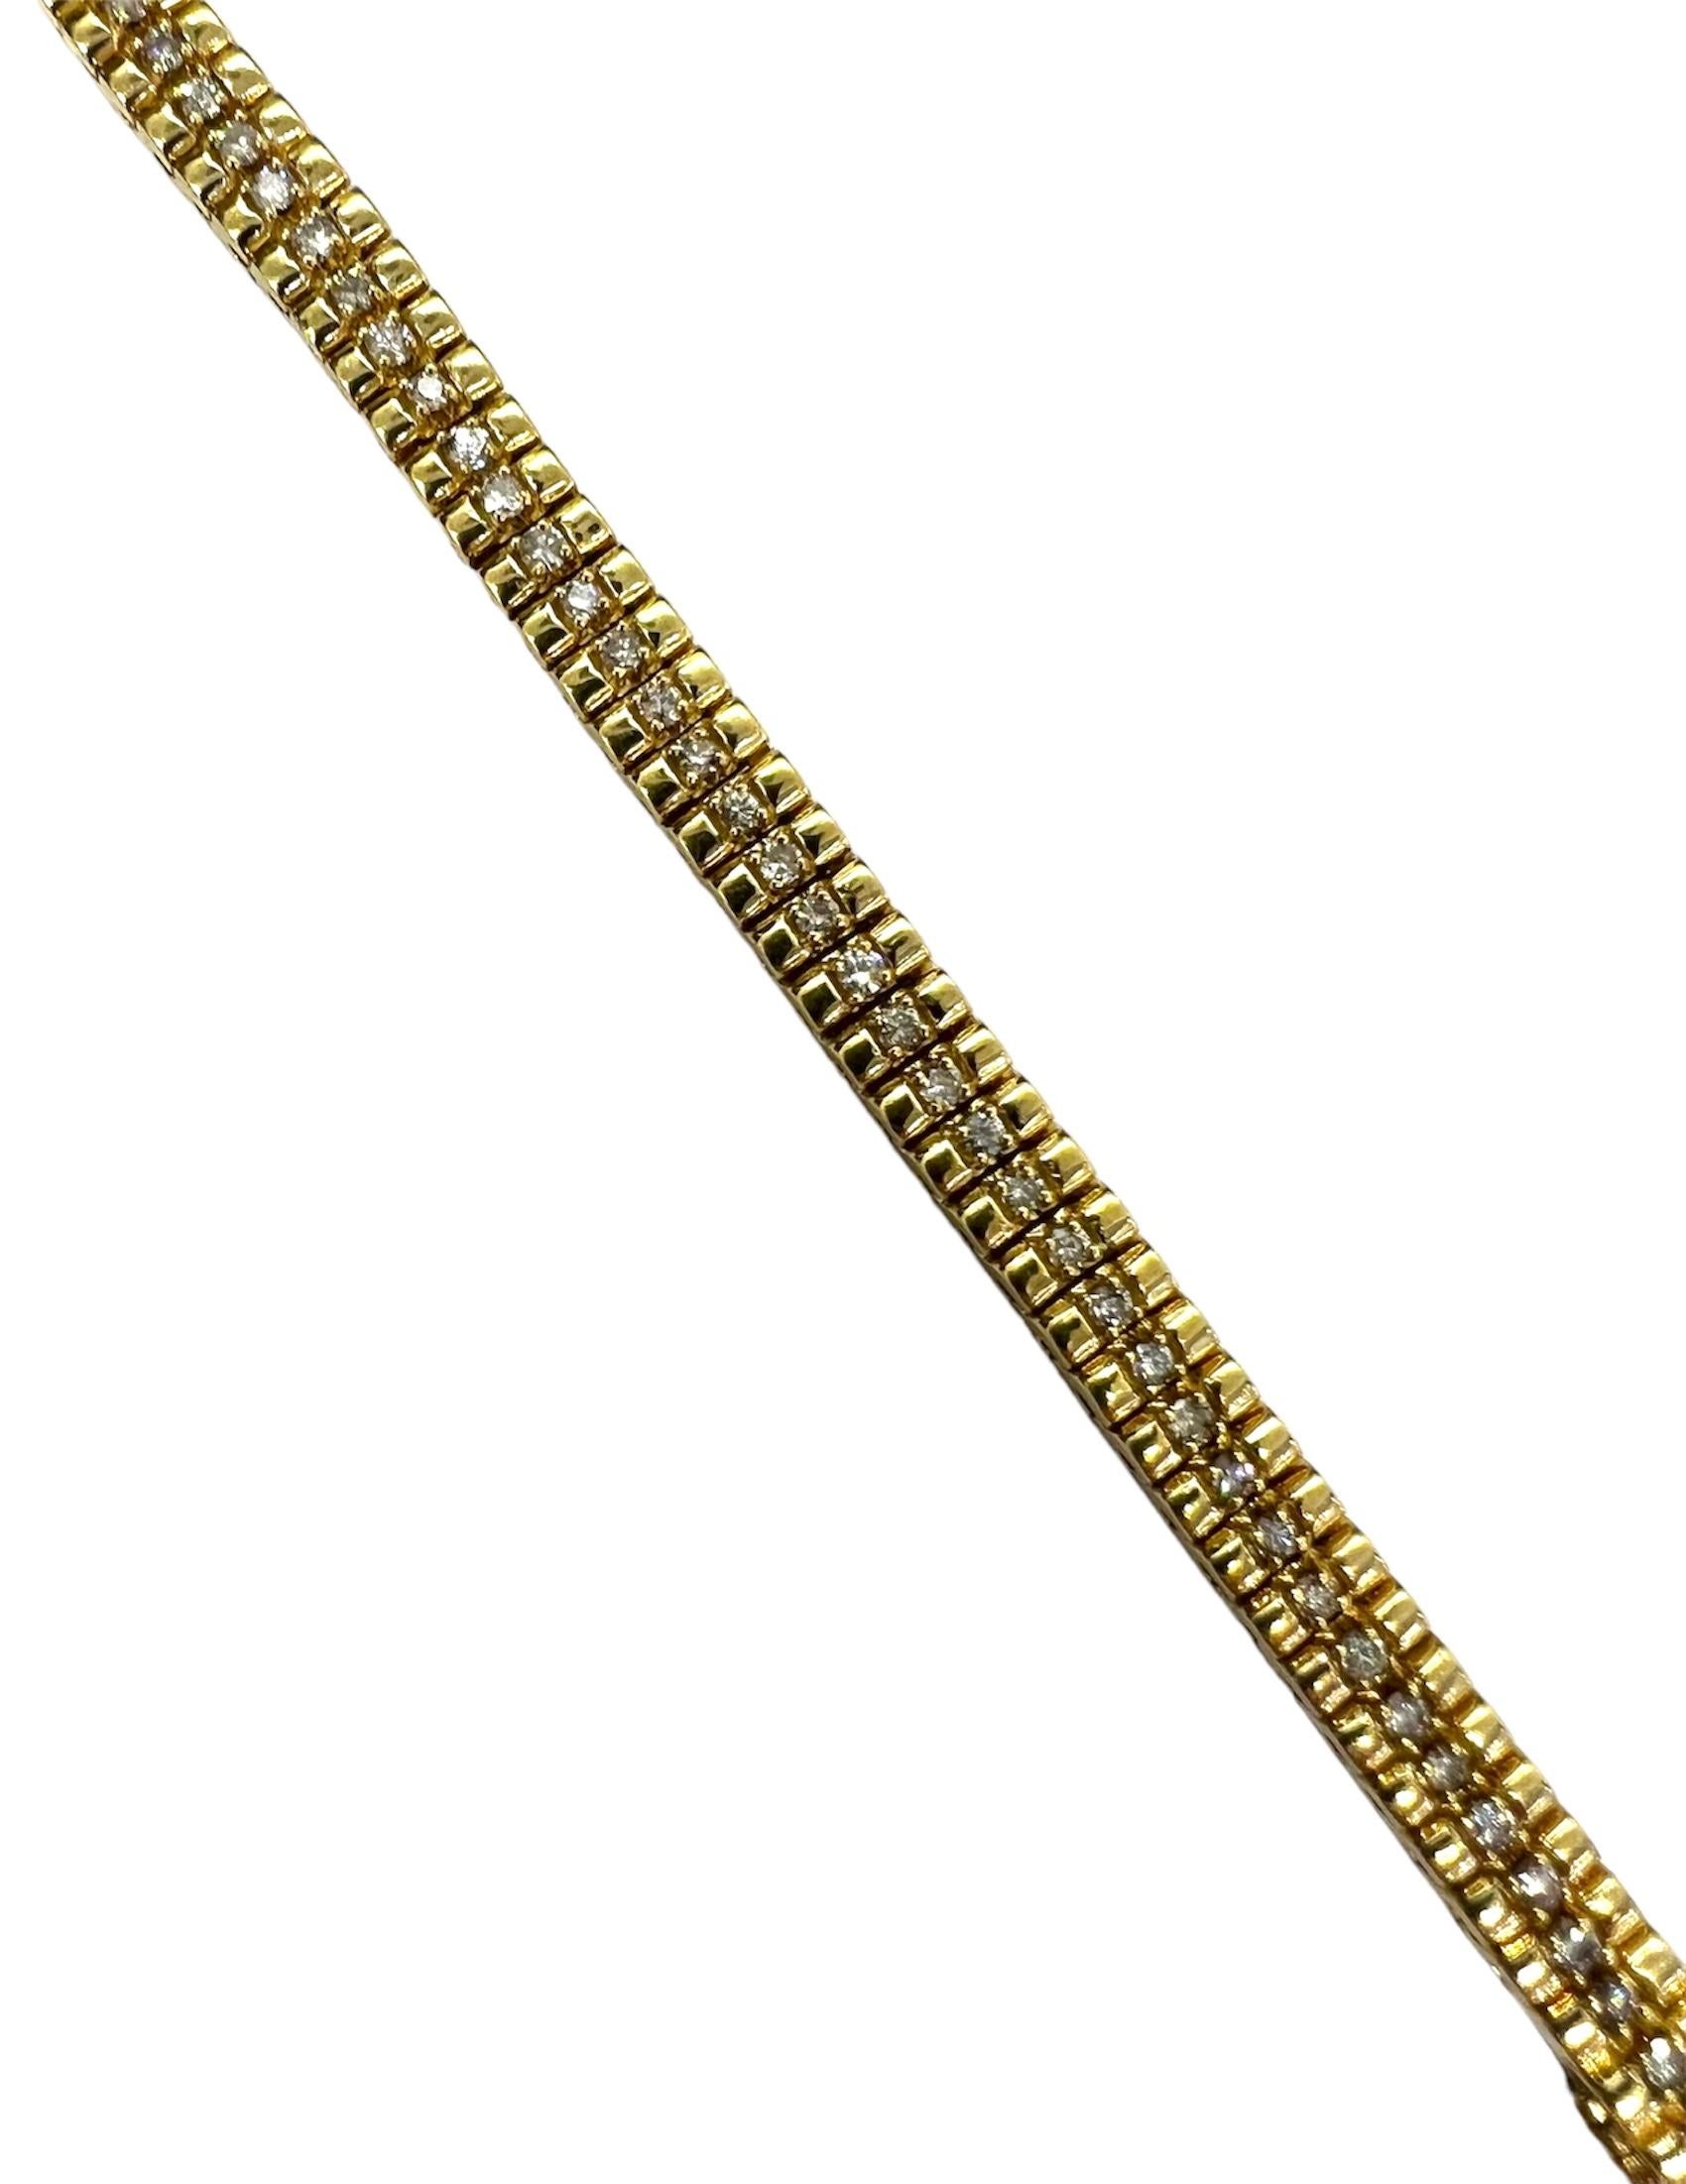 Armband aus 14 Karat Gelbgold mit Diamanten.

Sophia D von Joseph Dardashti LTD ist seit 35 Jahren weltweit bekannt und lässt sich vom klassischen Art-Déco-Design inspirieren, das mit modernen Fertigungstechniken verschmilzt.
